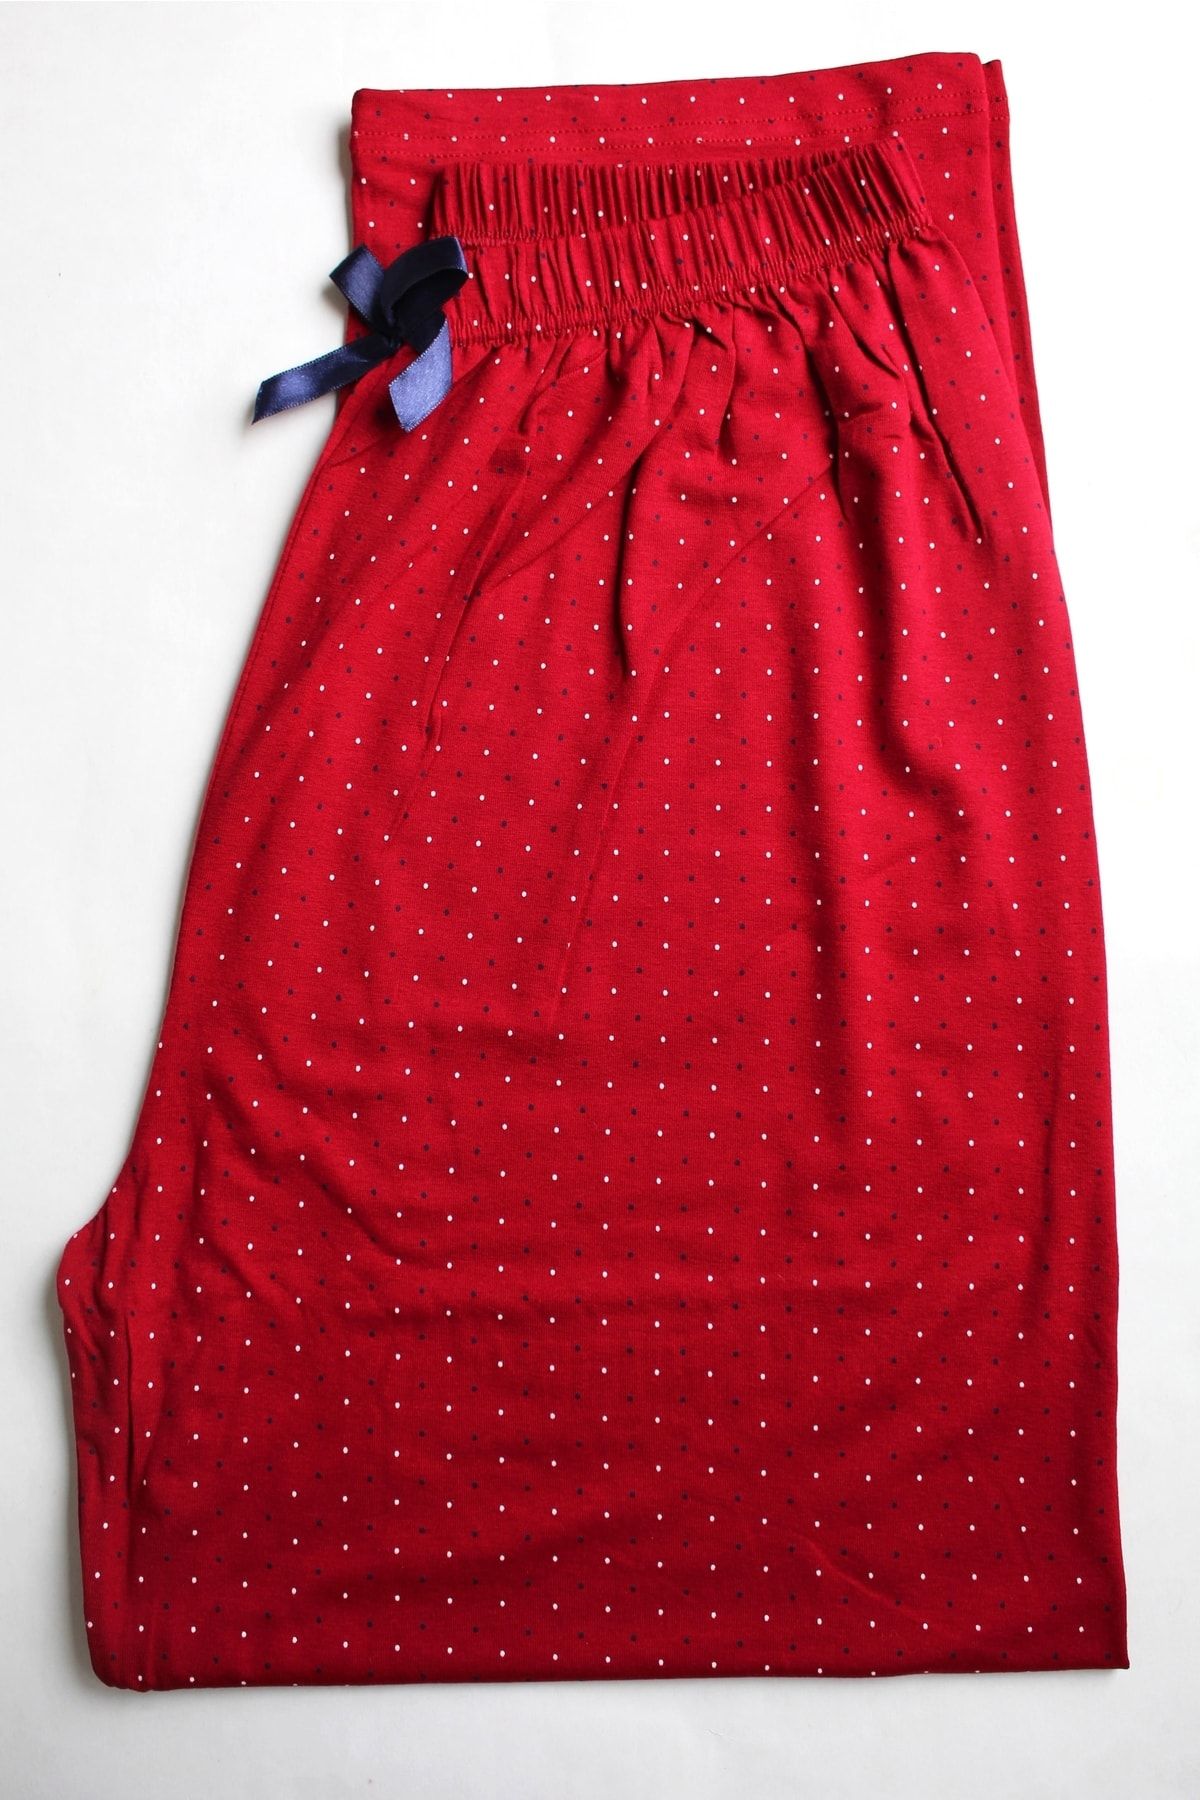 Made By me Kırmızı Puanlı Büyük Beden Pijama Altı %100 Modal Ince Yazlık Esnek Kumaş Modern Kaliteli Estetik